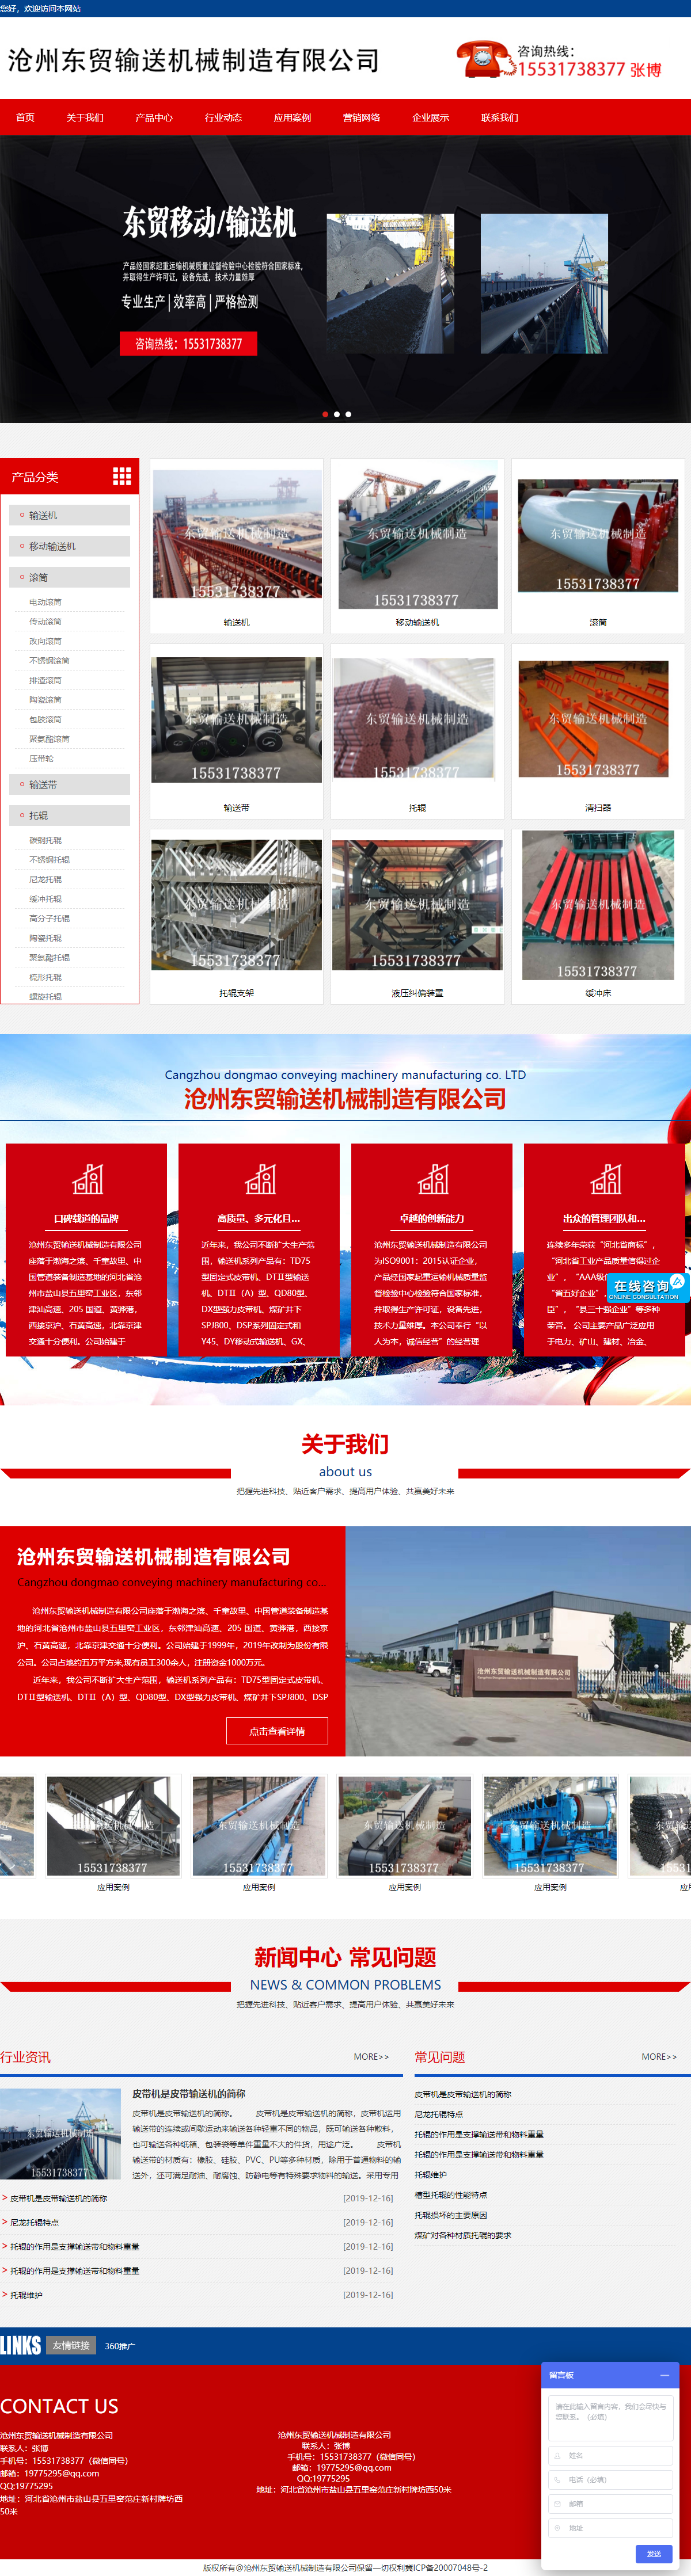 沧州东贸输送机械制造有限公司网站案例